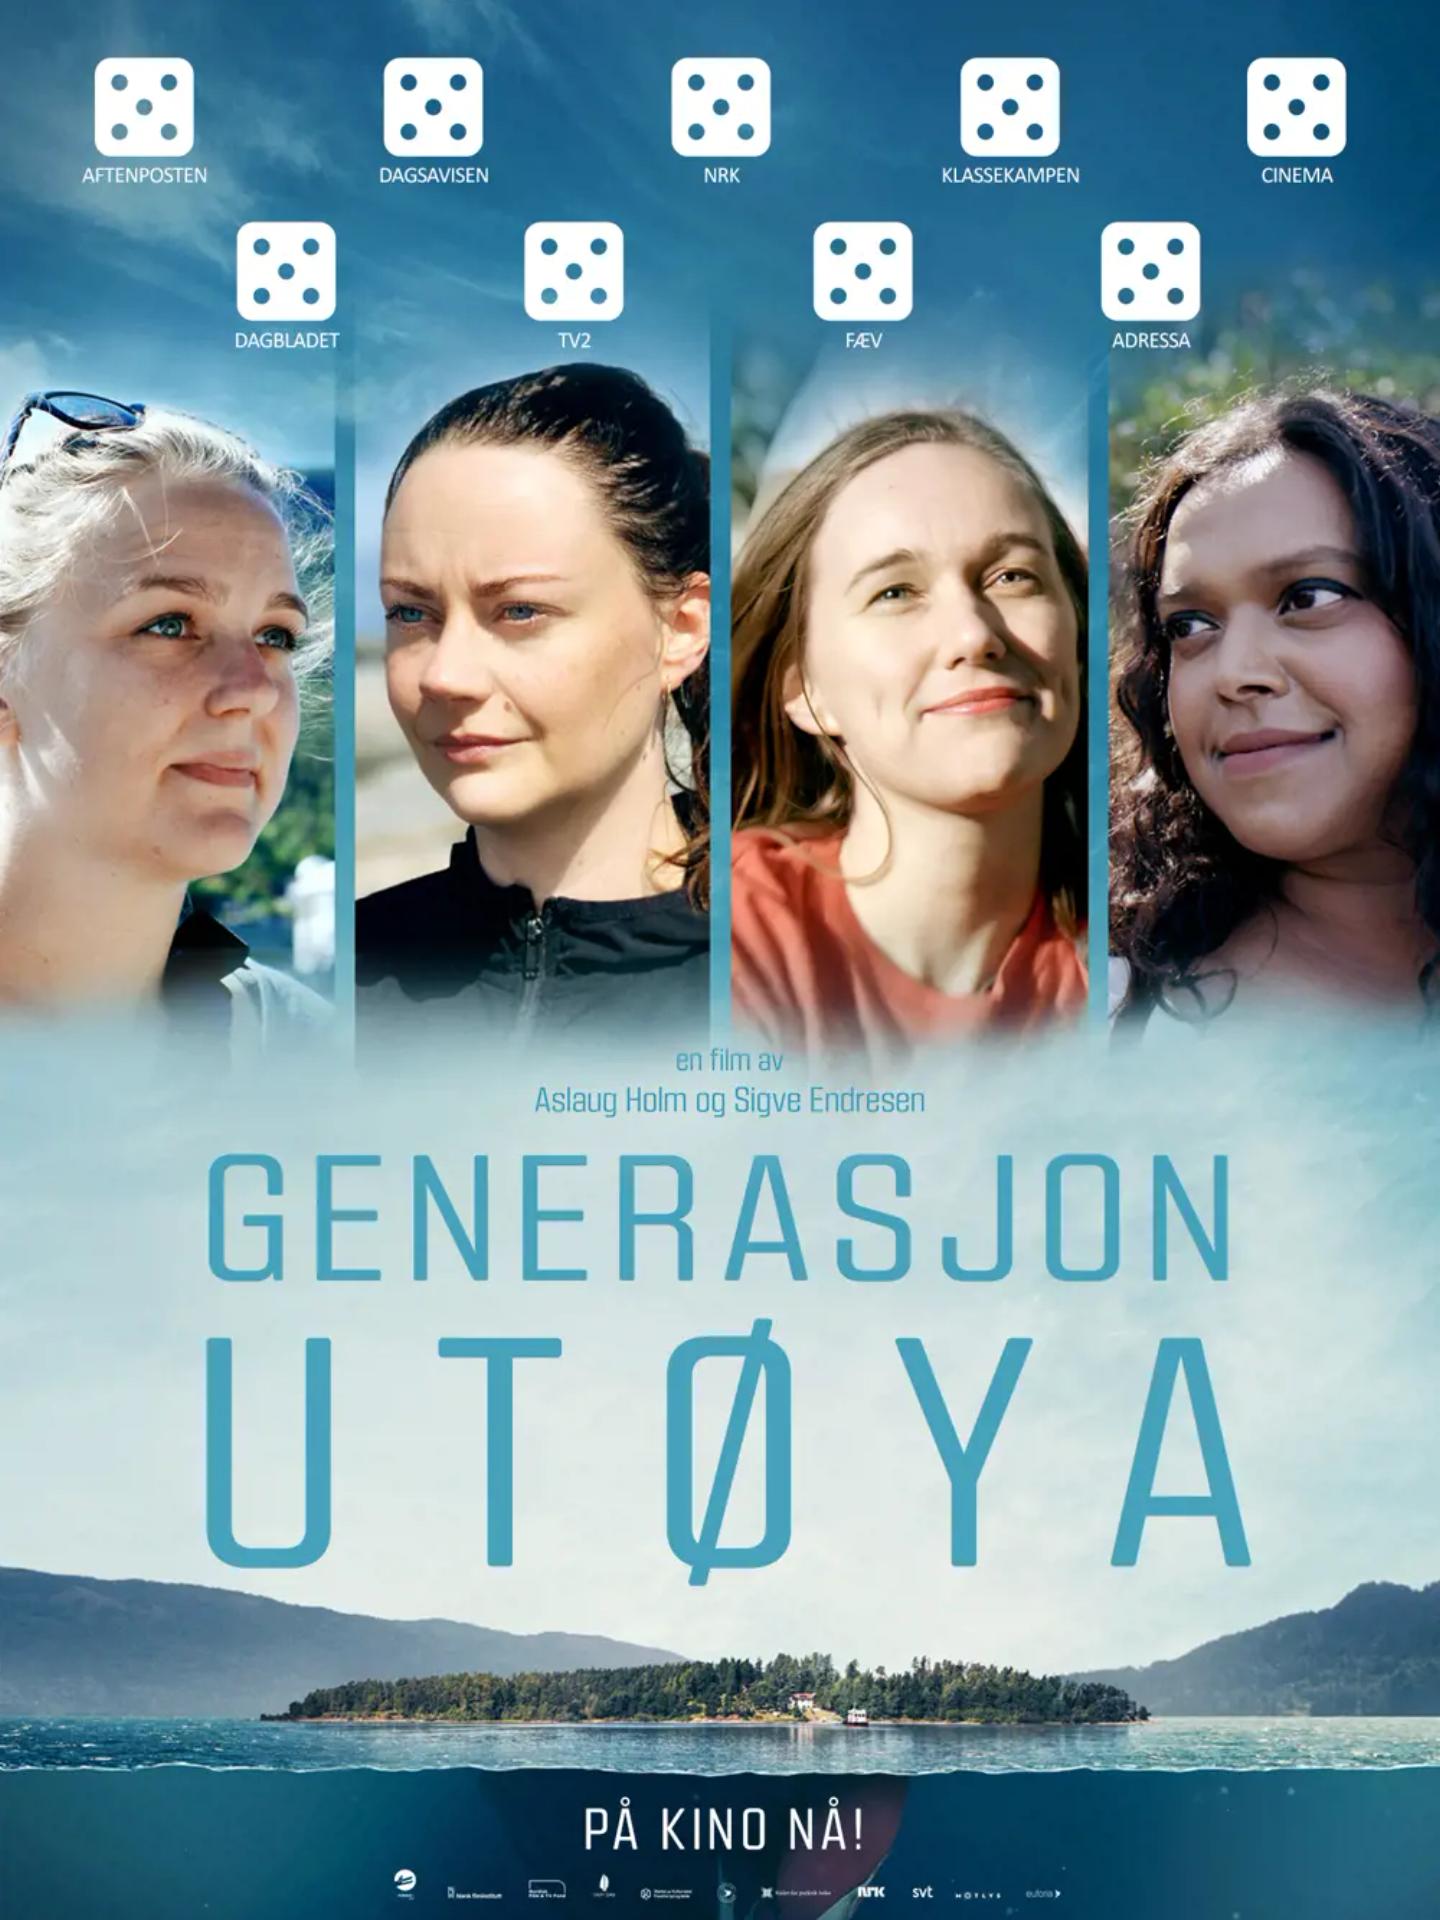 Generasjon Utøya